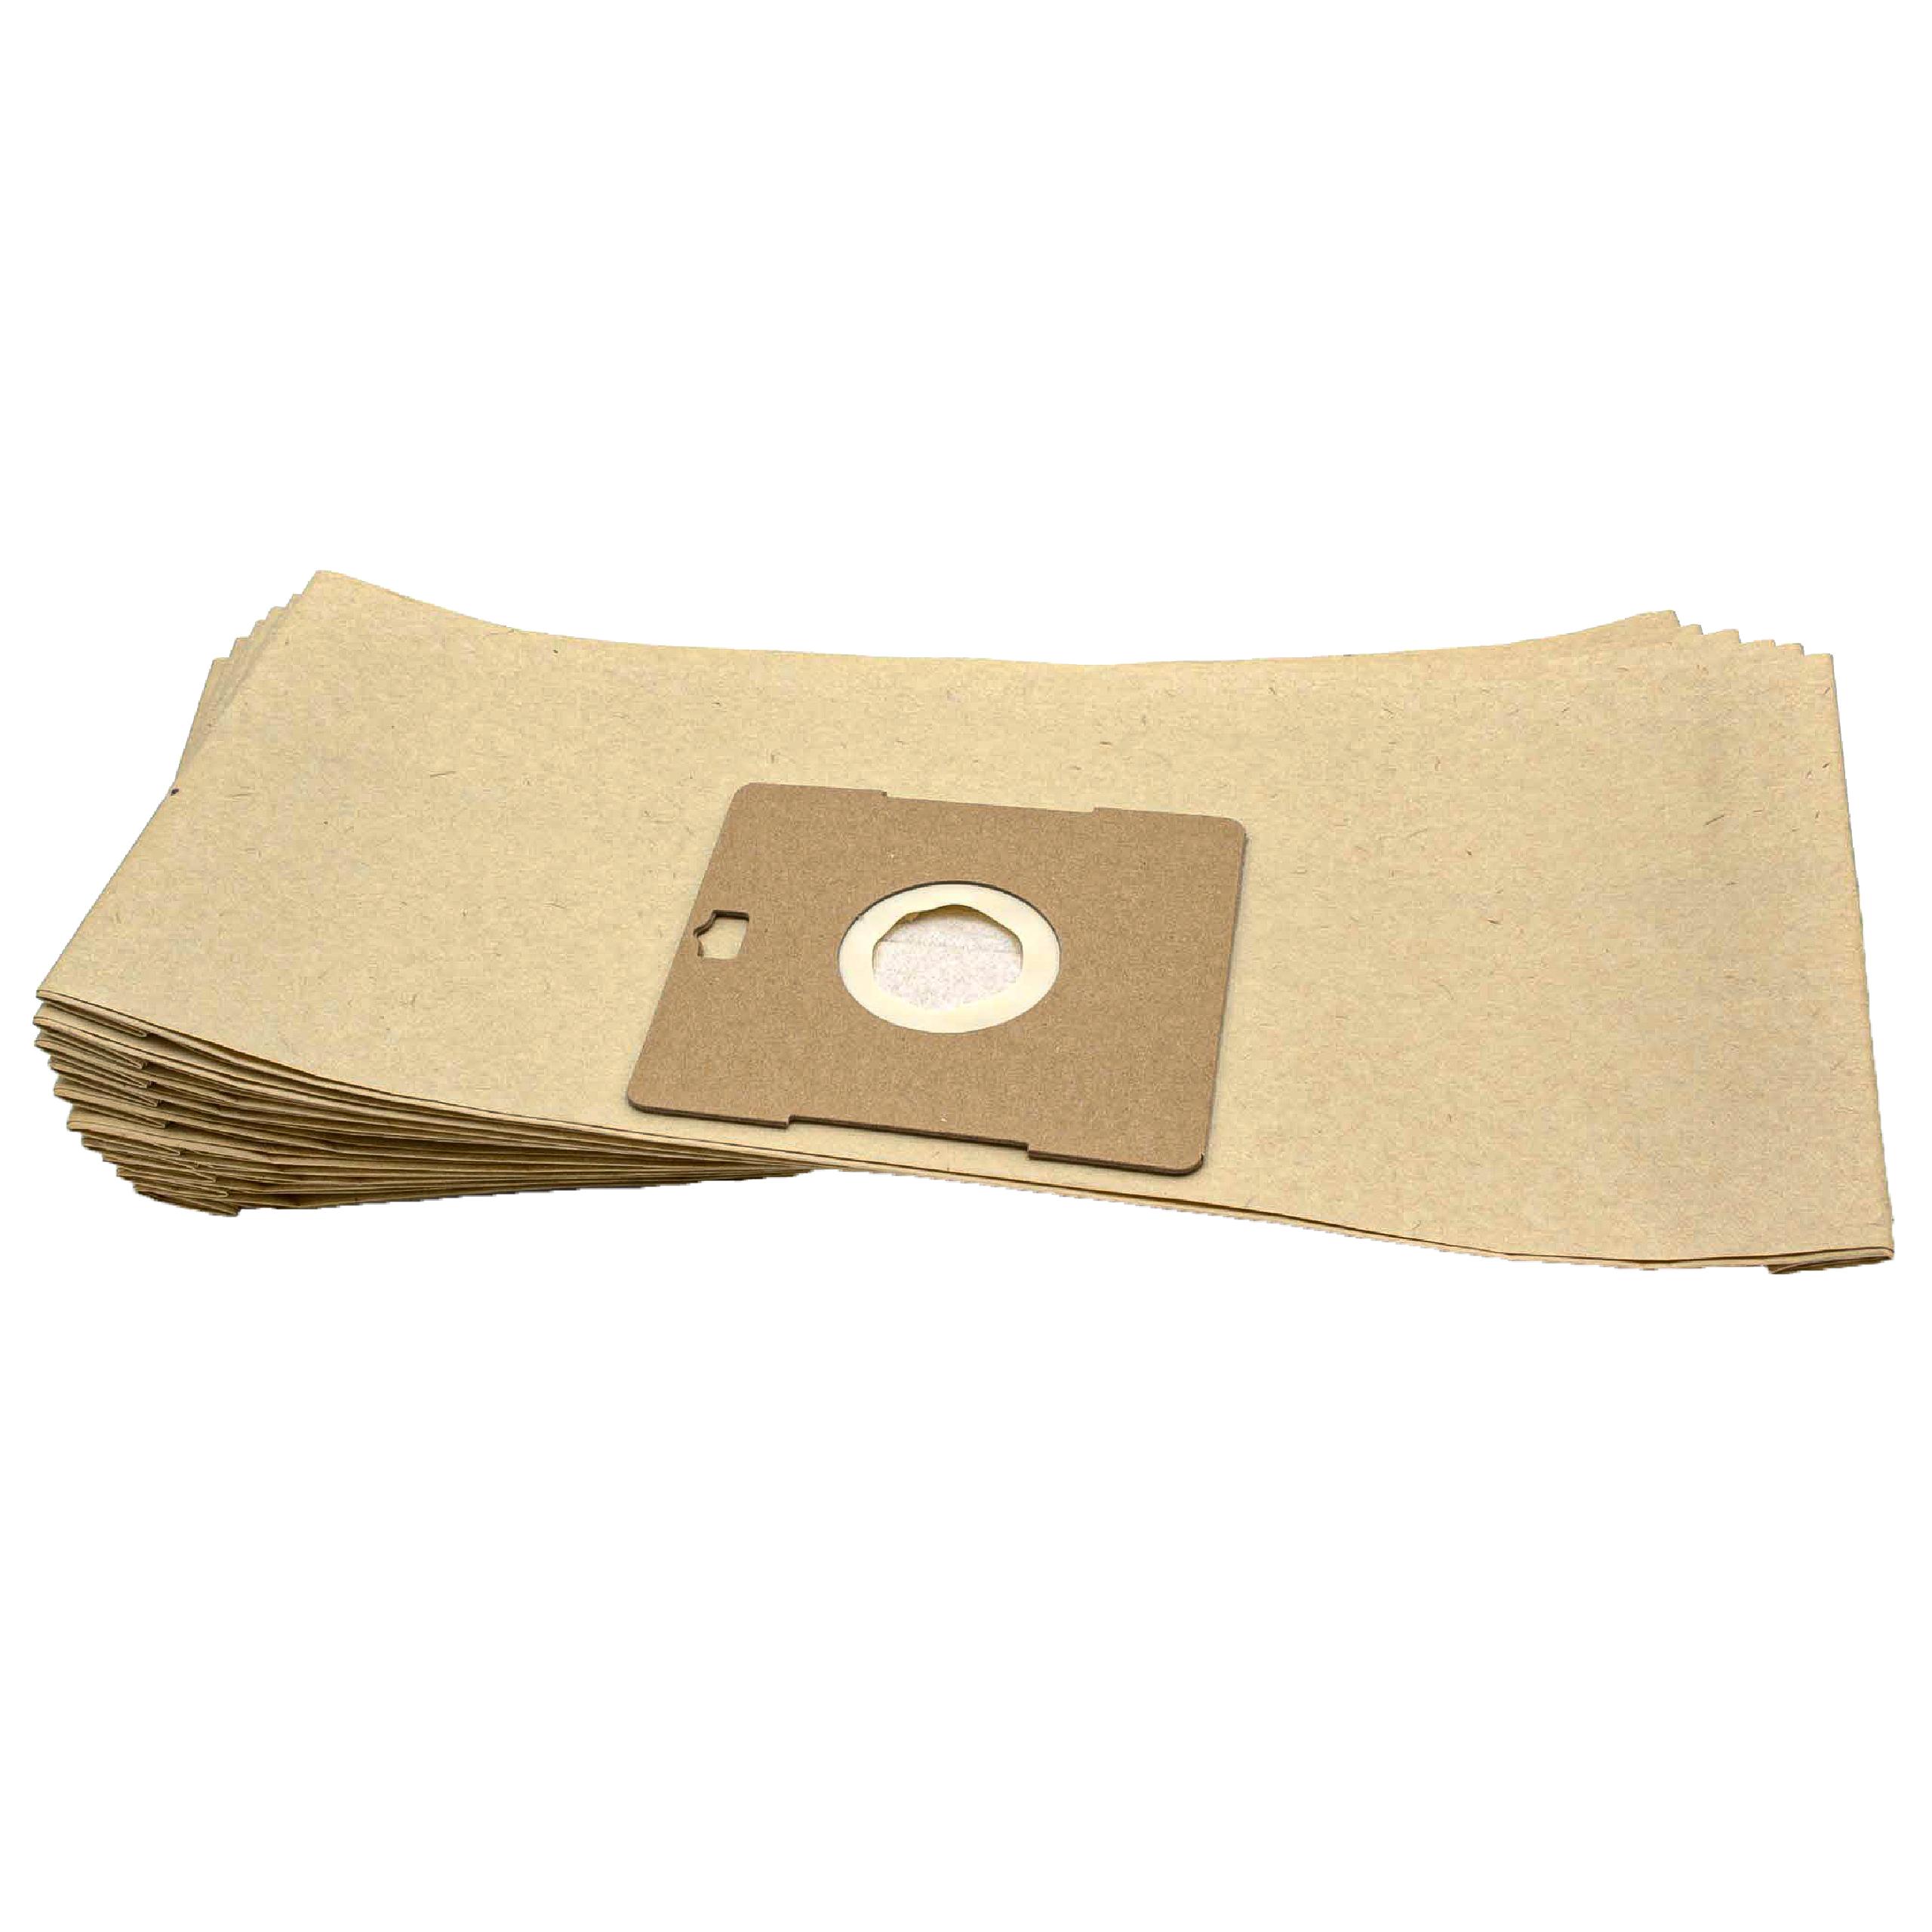 10x Staubsaugerbeutel als Ersatz für Grundig Typ G - Hygiene Bag für Proline Staubsauger u.a. - Papier